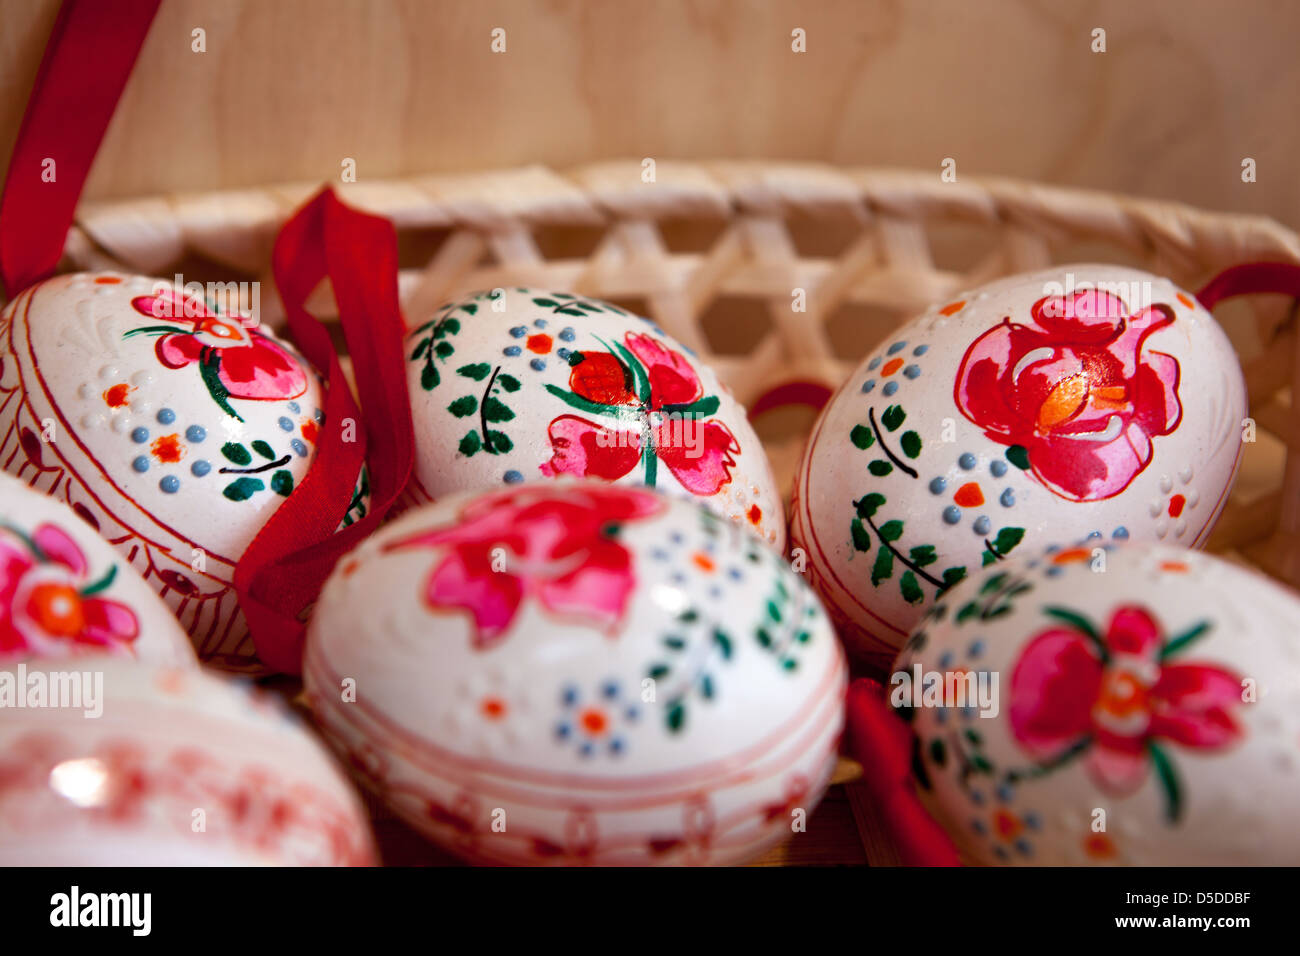 Original Czech Easter Eggs, Painted Easter Eggs in a basket, Prague Czech Republic Stock Photo